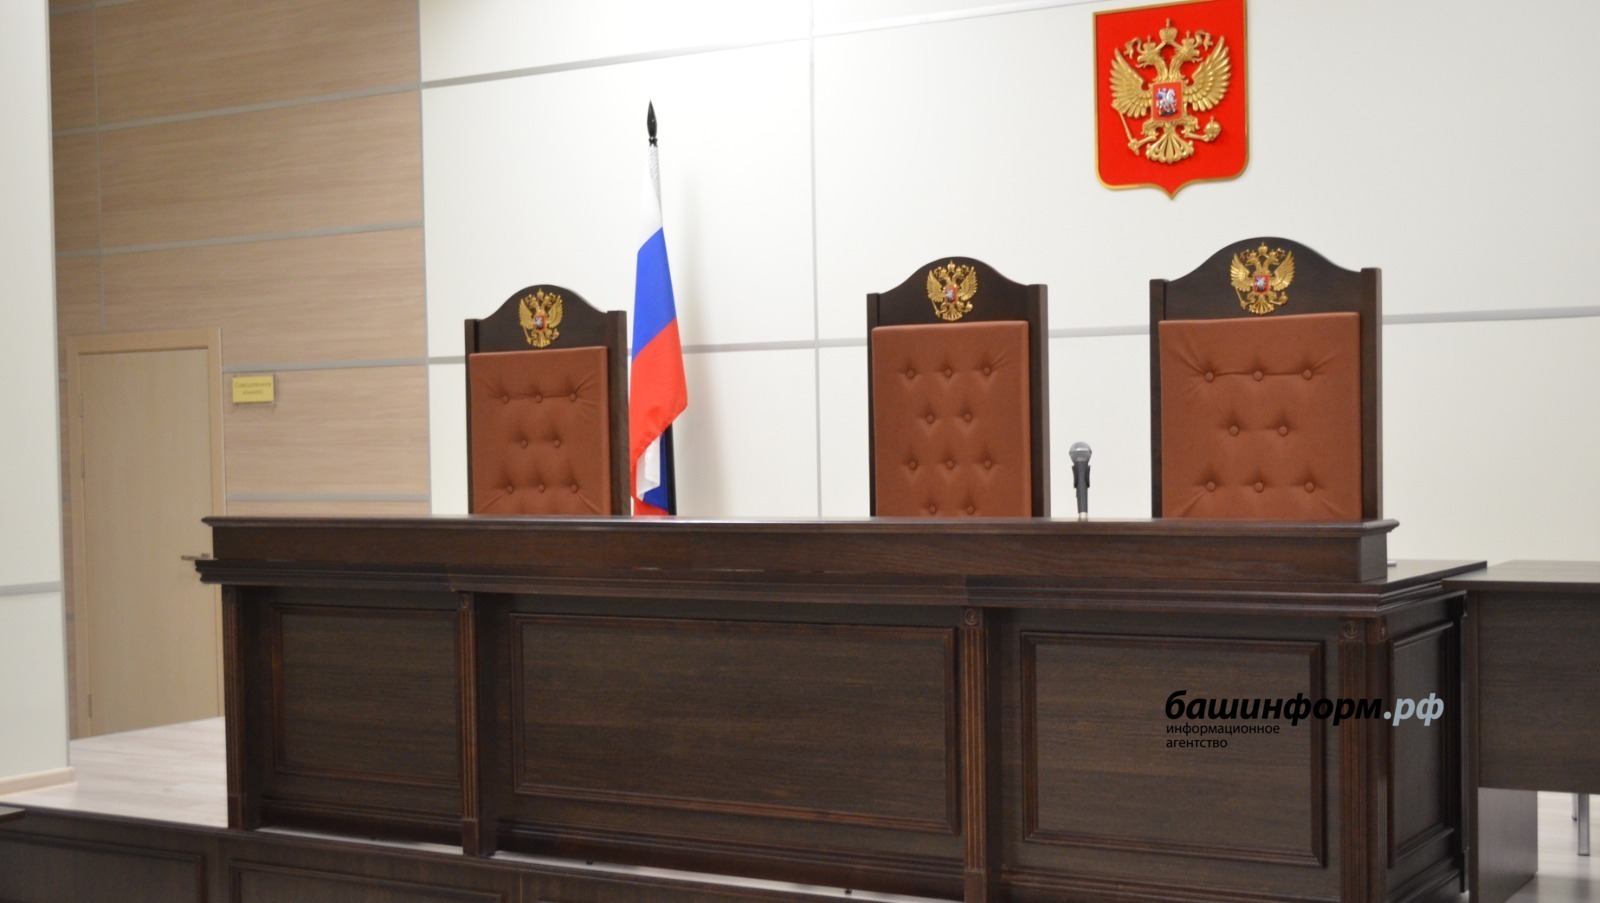 В Башкирии суд огласил приговор бывшему главе сельсовета по обвинению в мошенничестве и растрате